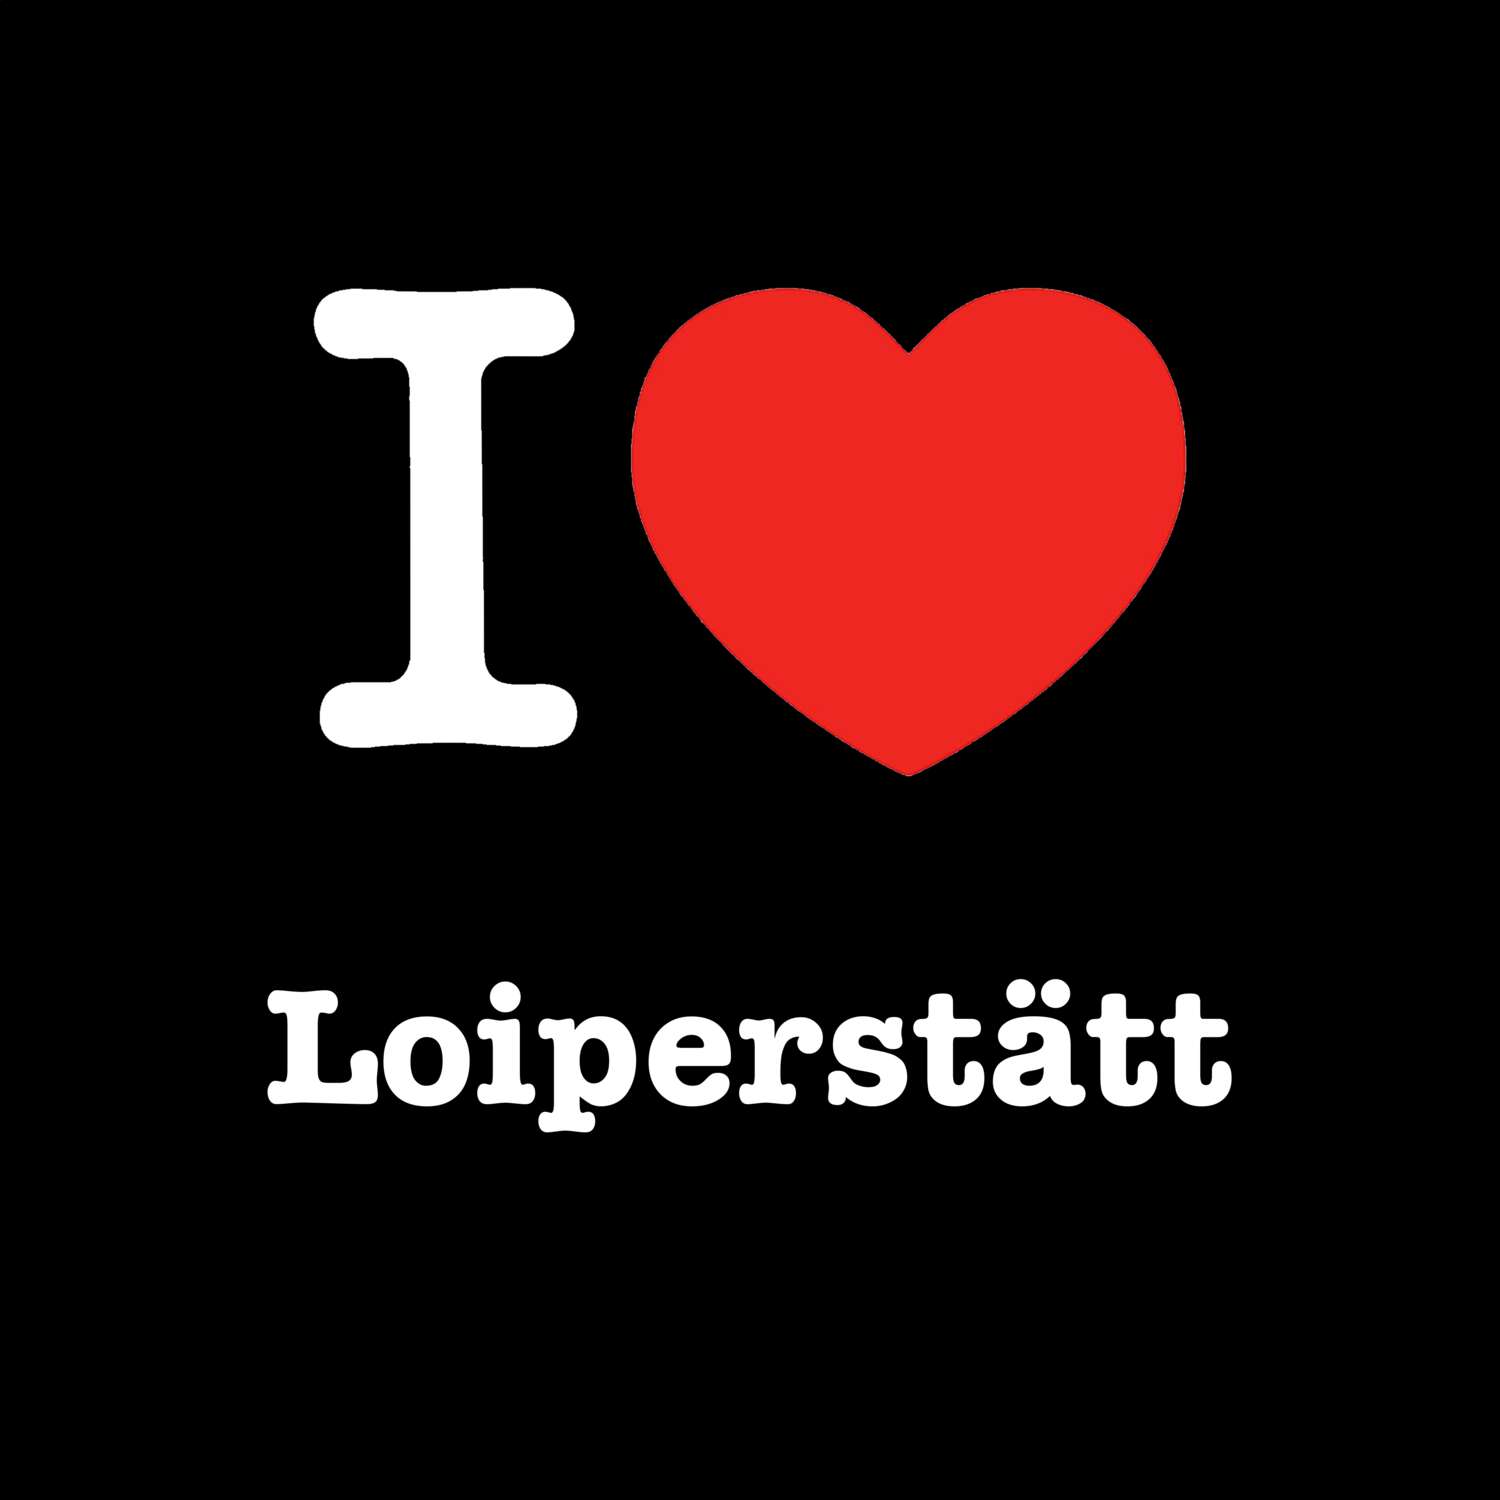 Loiperstätt T-Shirt »I love«